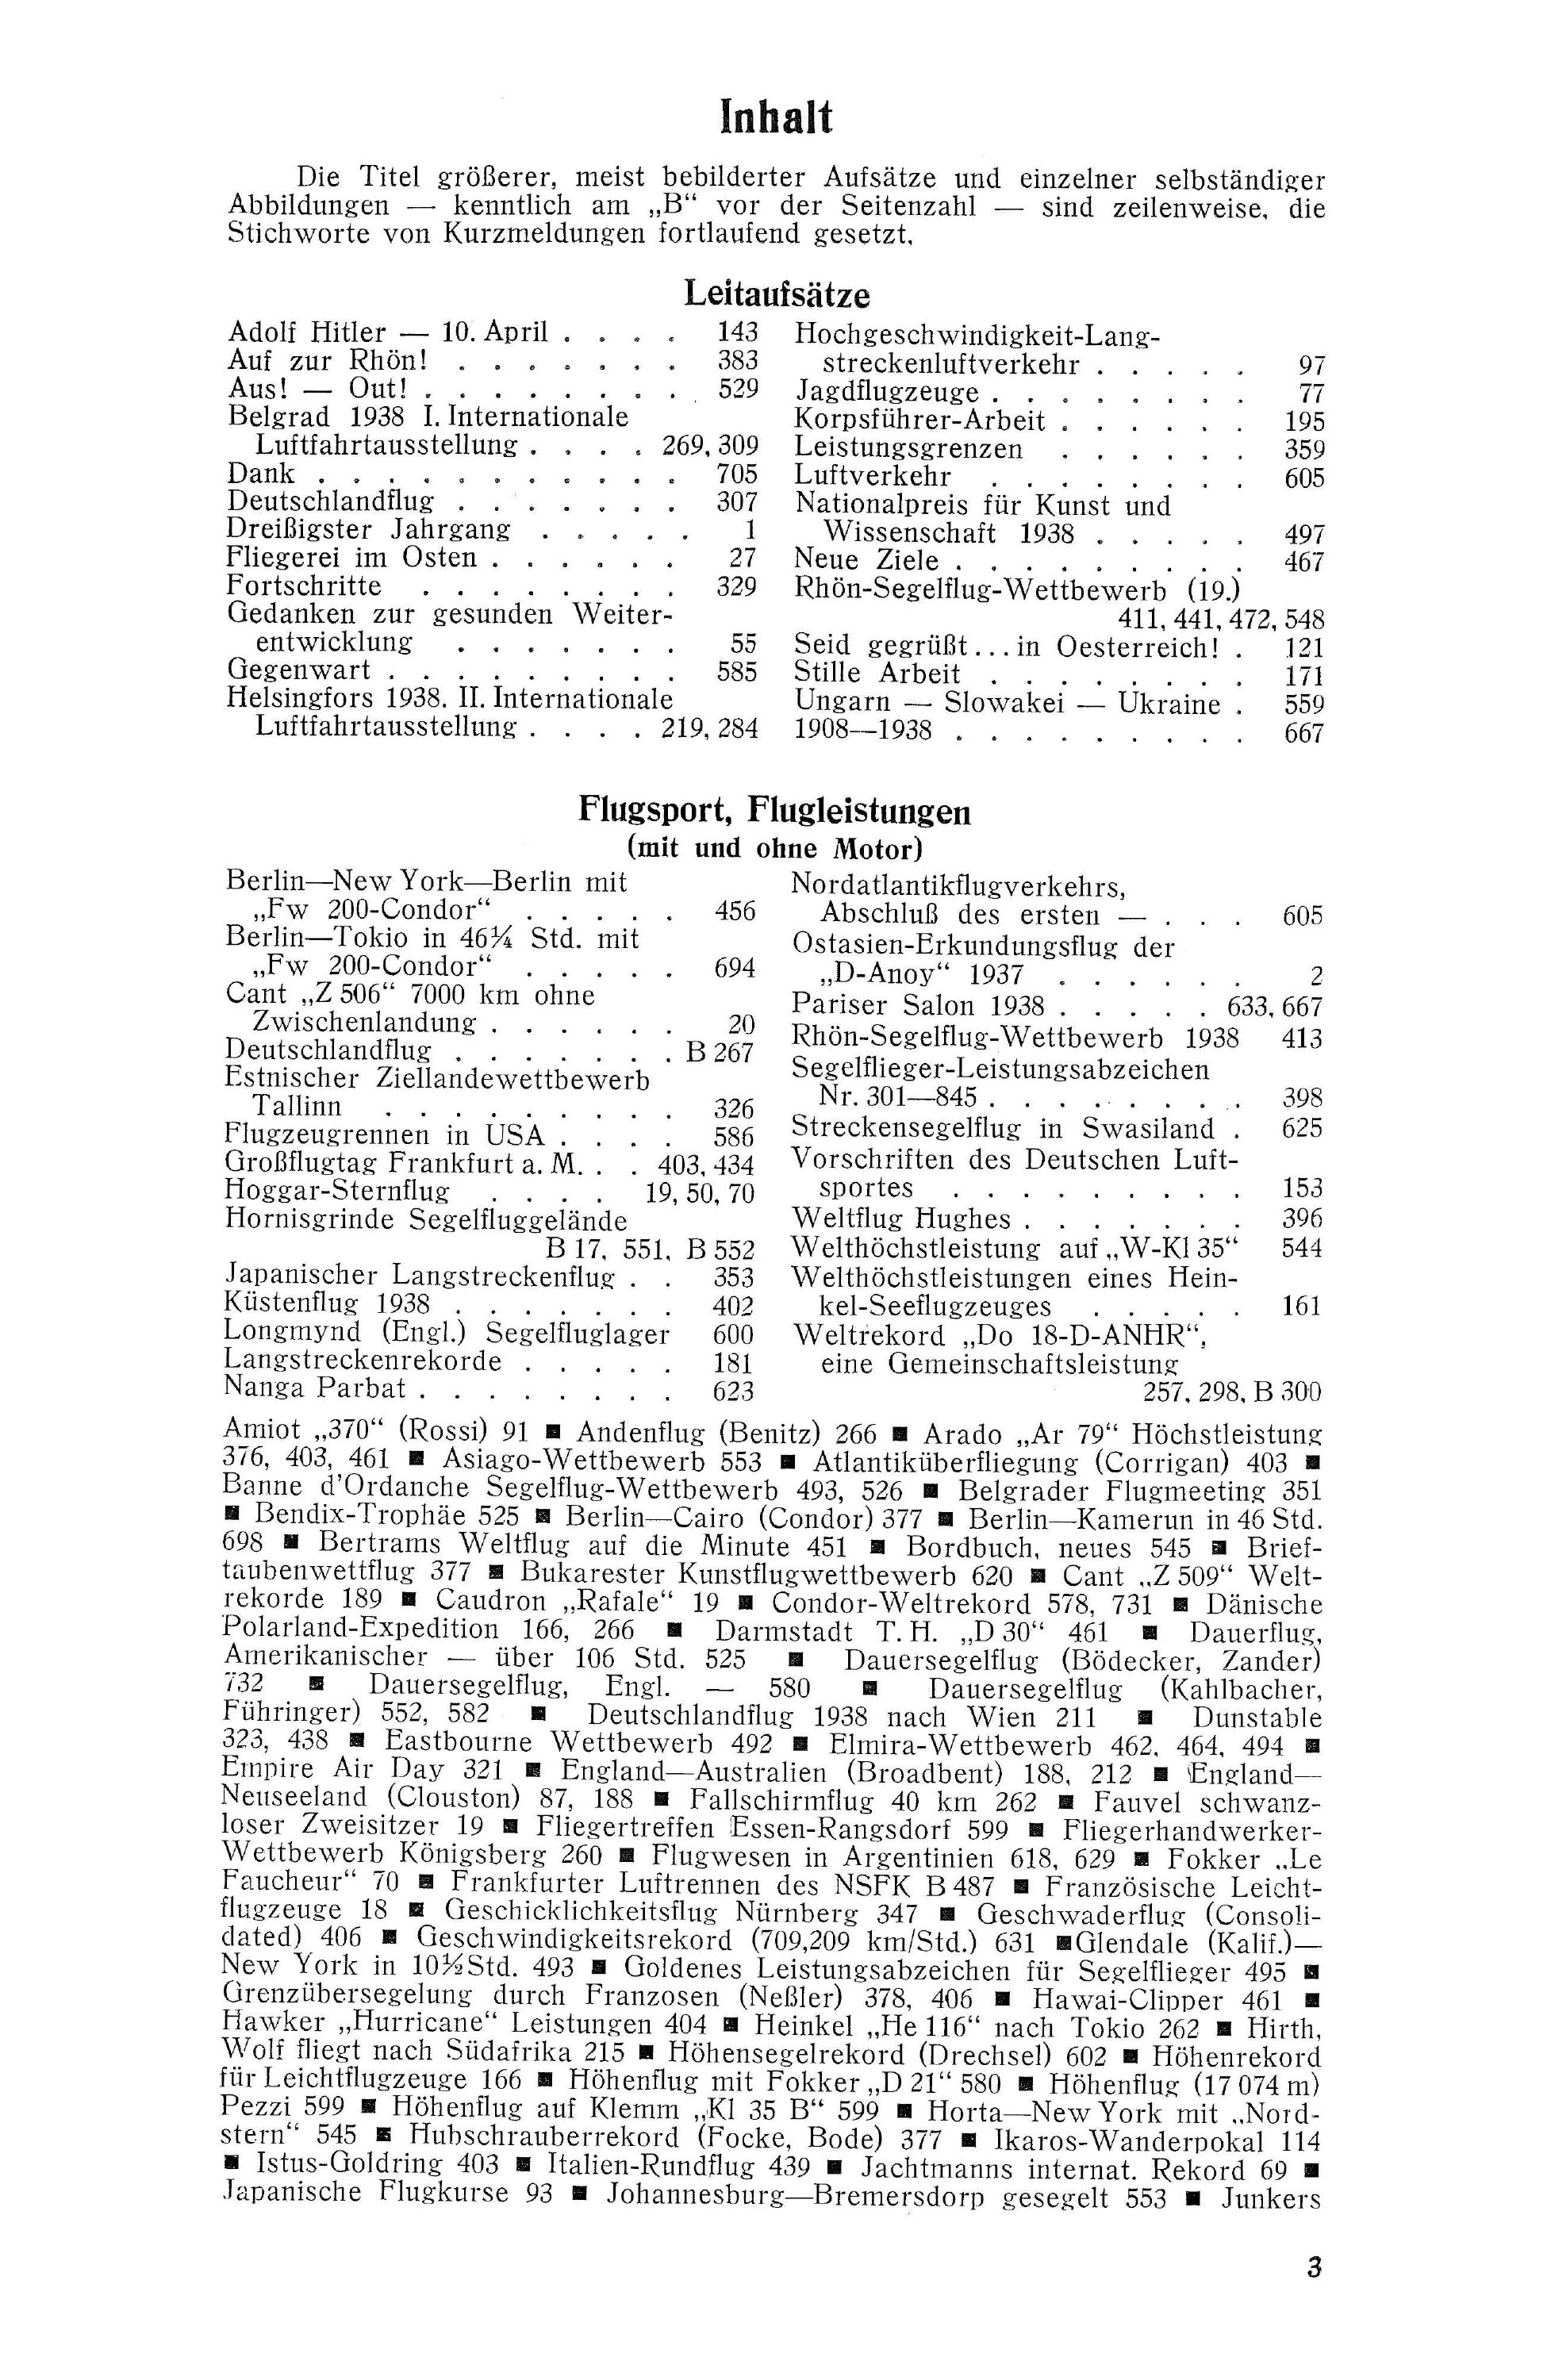 Sachregister und Inhaltsverzeichnis der Zeitschrift Flugsport 1938